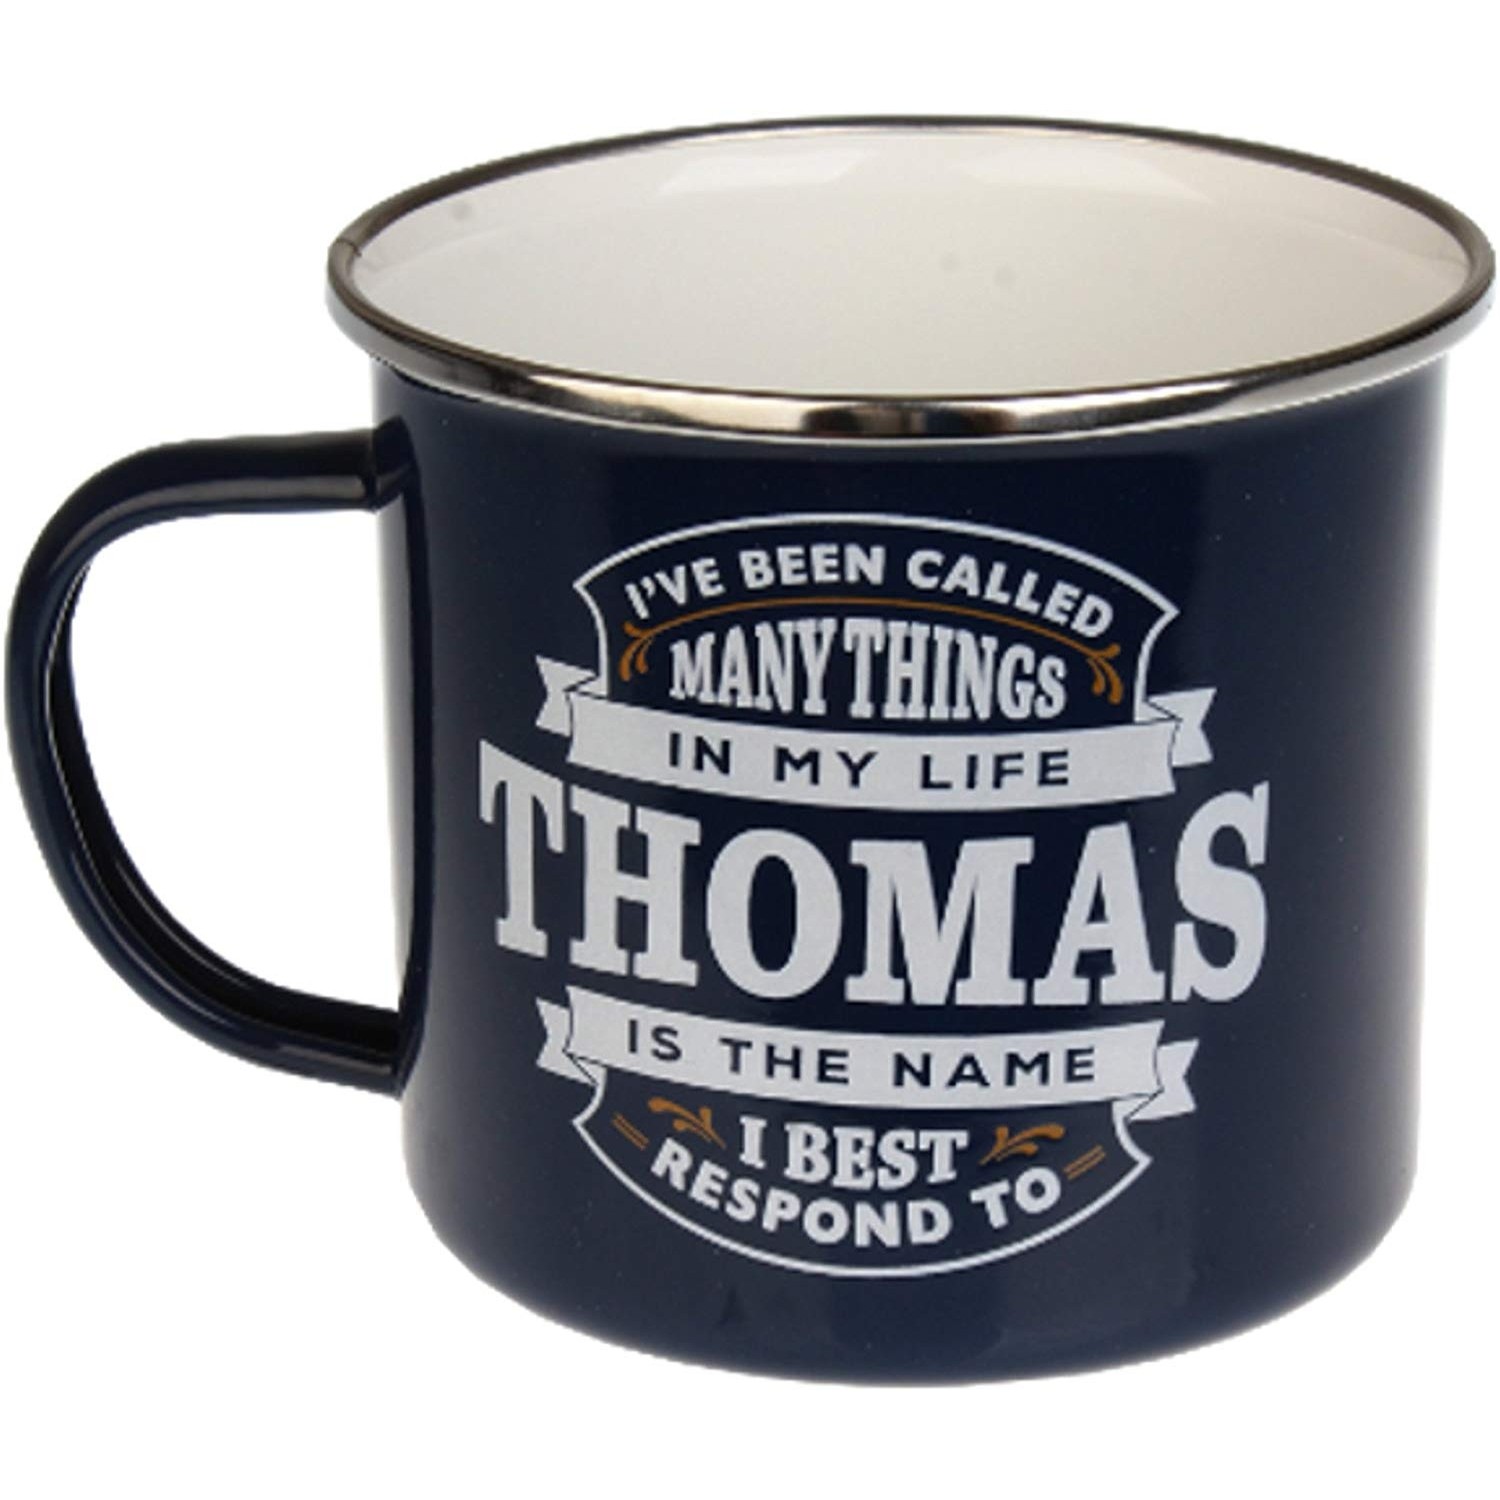 Top Guy Enamel Mugs (Thomas)